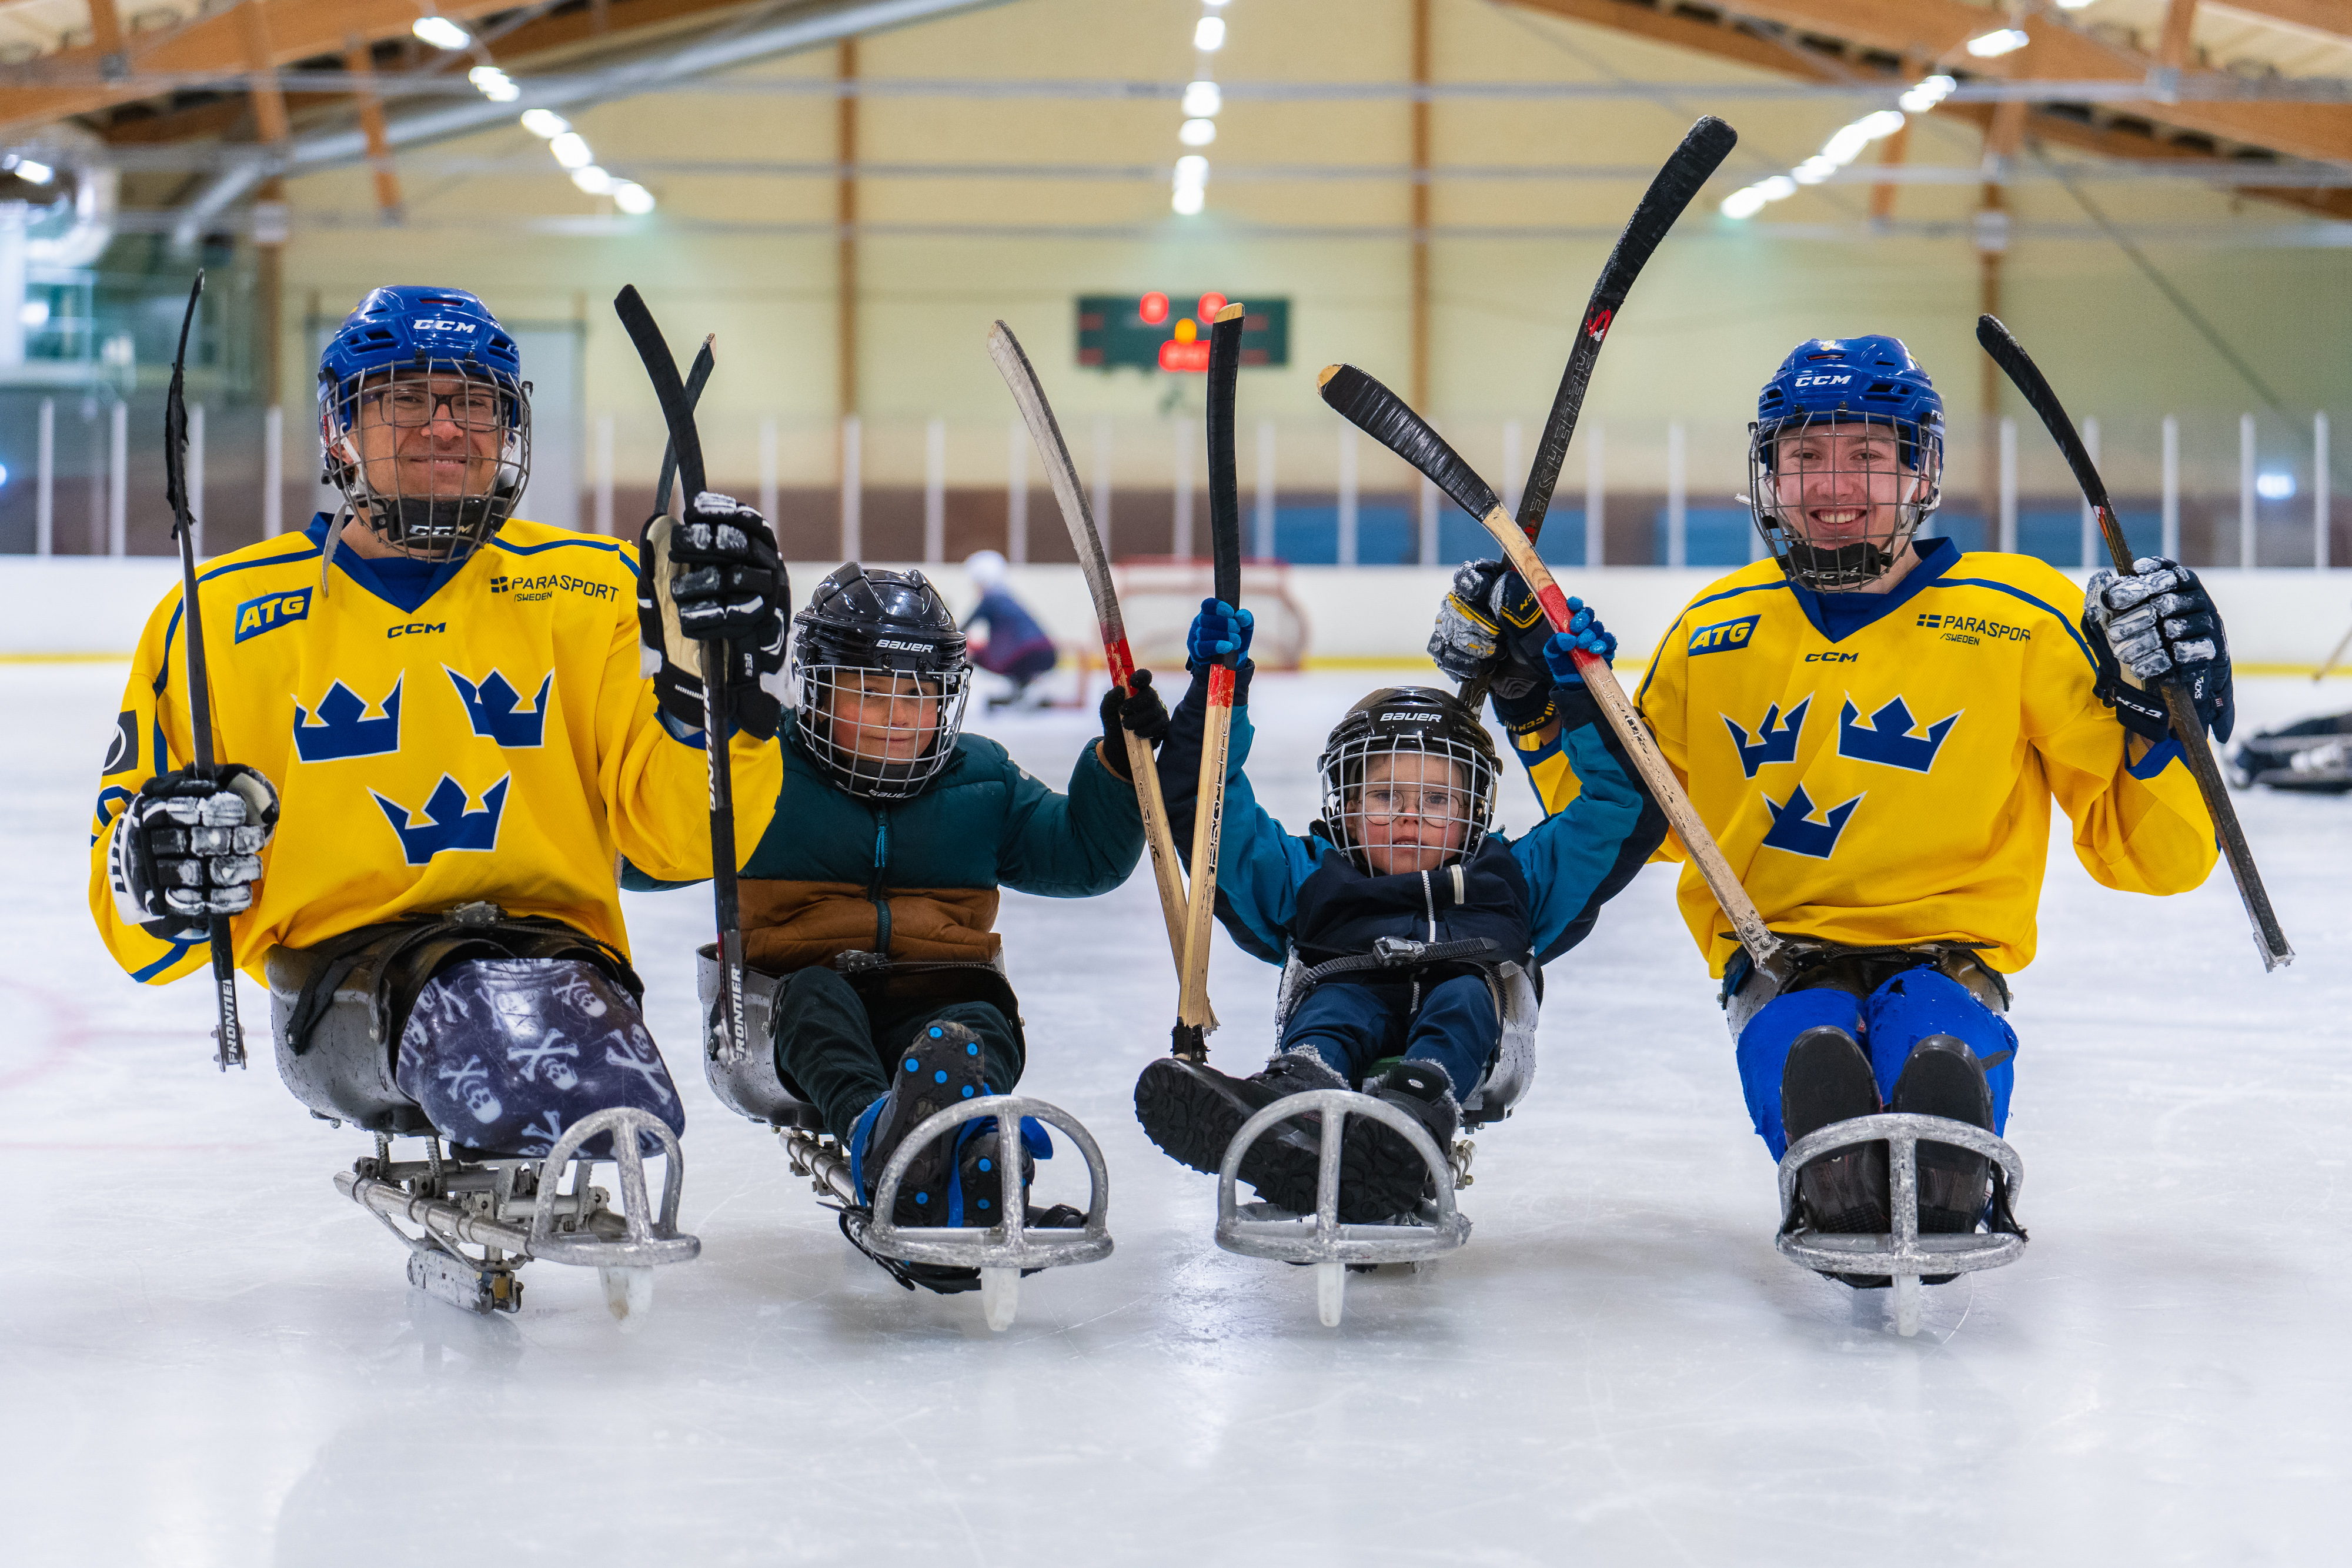 Inomhus, ishall. Fyra paraishockeyspelare. Två barn som provar på i mitten, på vardera sida en äldre landslagsspelare. De sitter på isen i kälkar med utrustning och hockeyklubbor. 